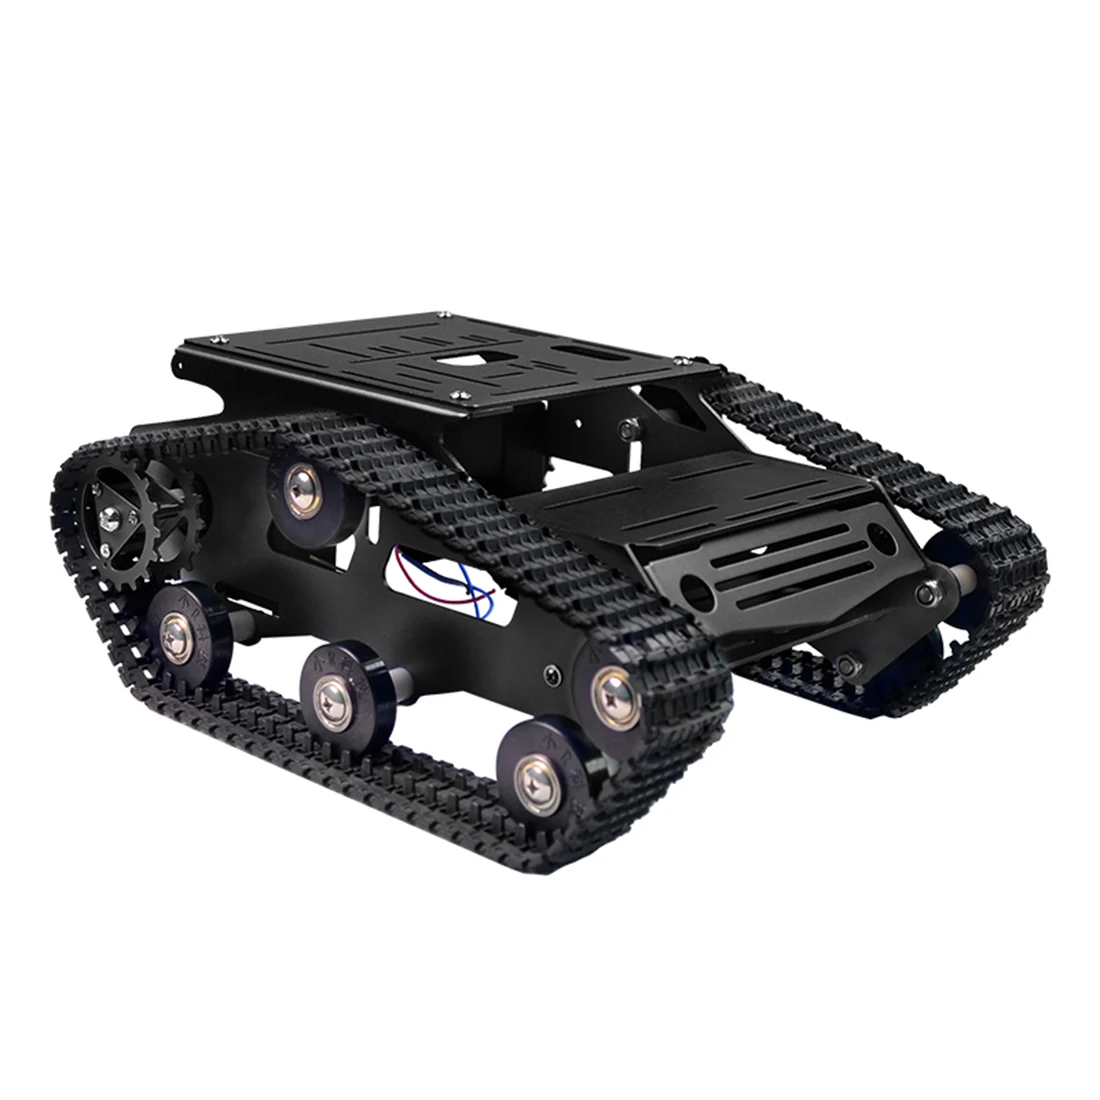 DIY умный робот гусеничный Танк шасси автомобиля рама комплект модель образовательная игрушка подарок для ребенка ребенок взрослый-синий/черный/красный/золотой/зеленый - Цвет: Черный